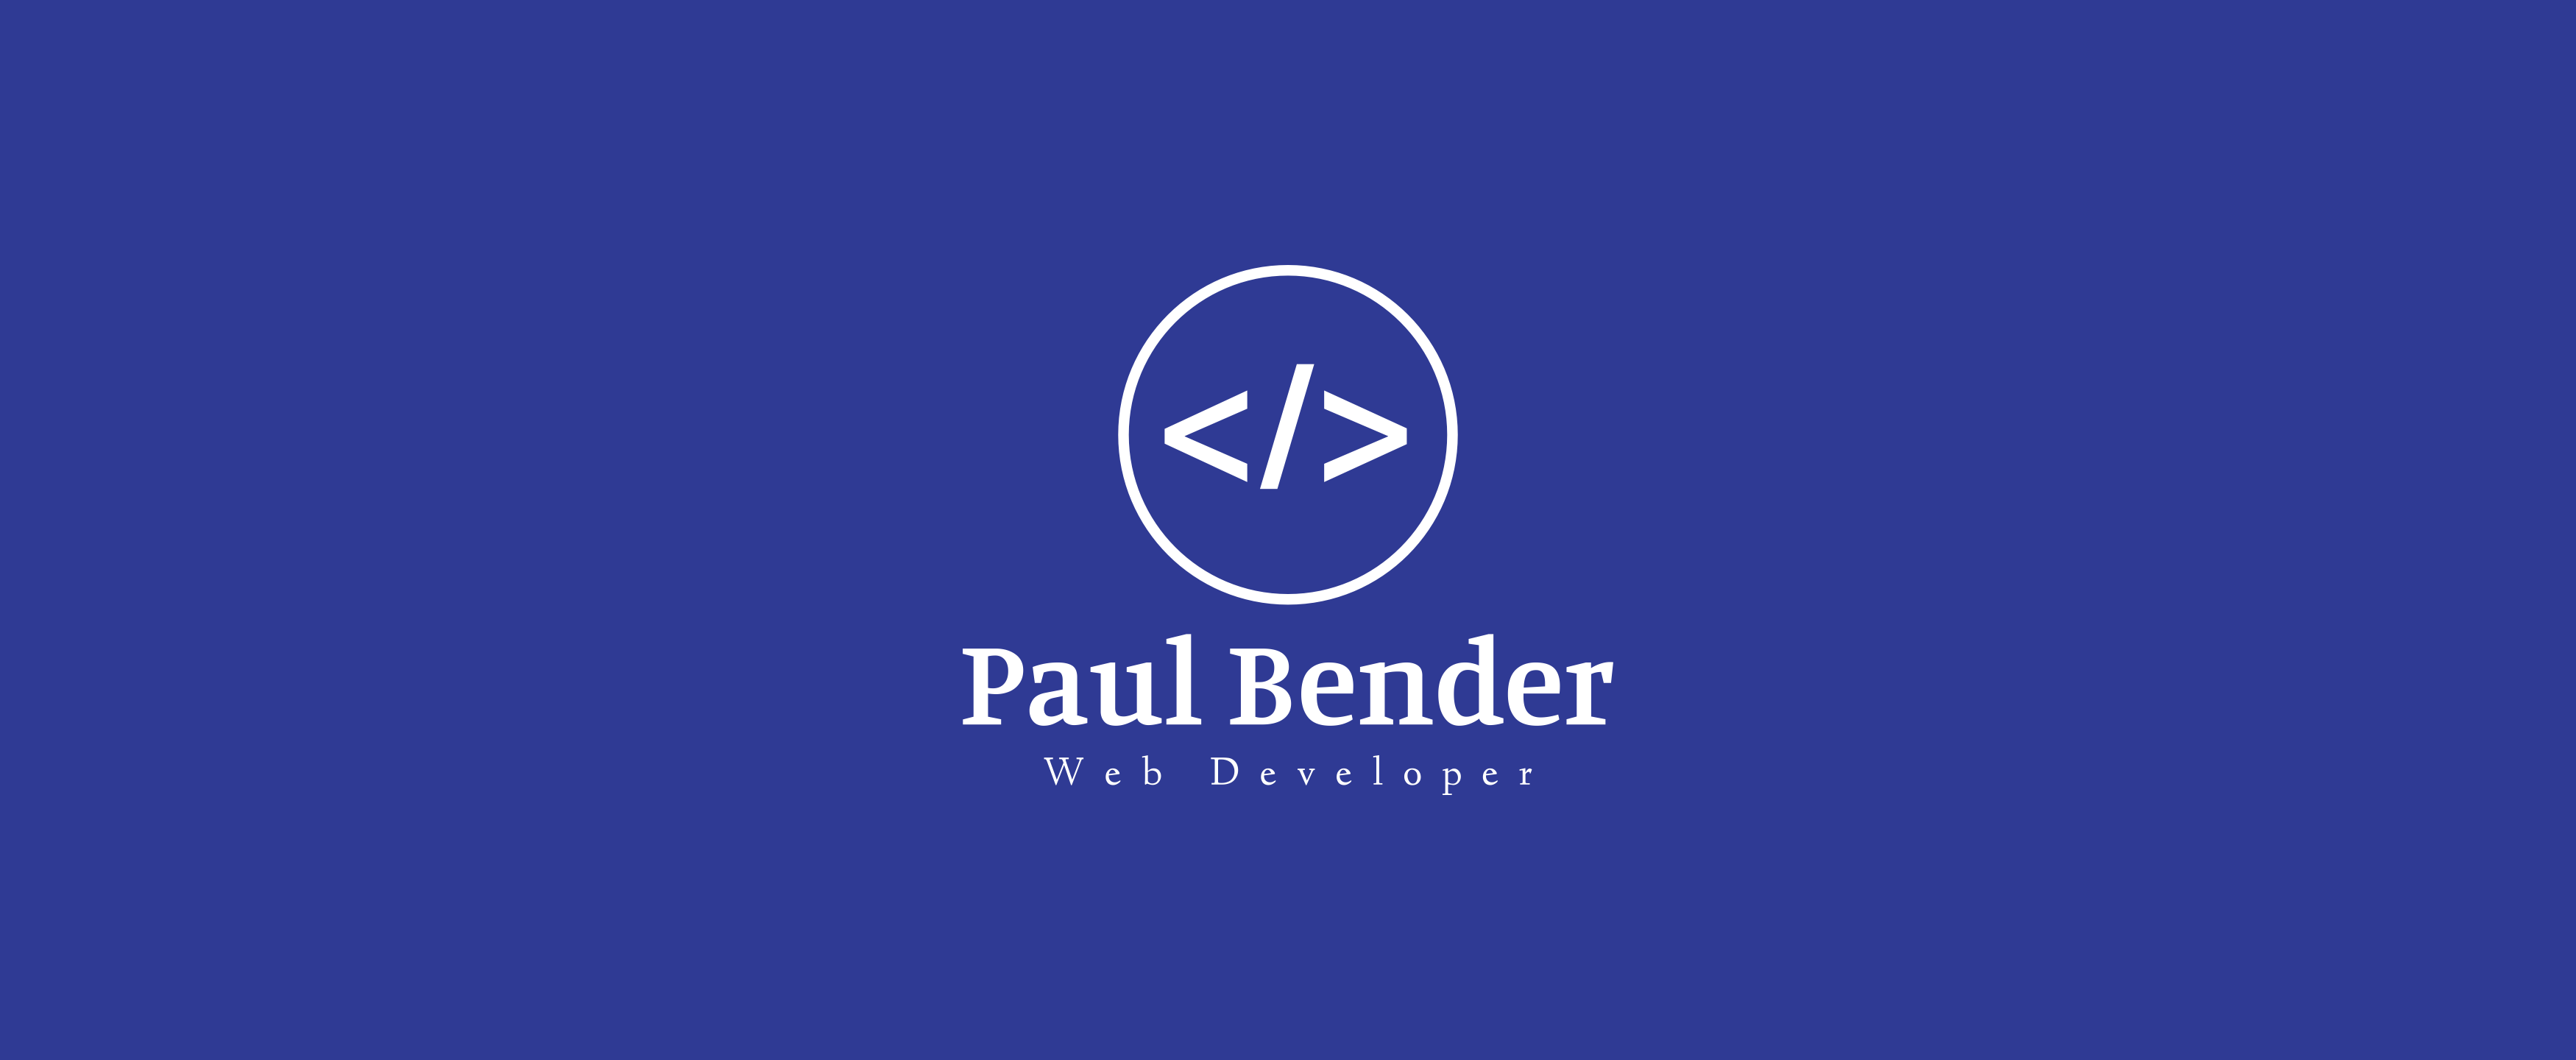 Paul Bender Software Engineer